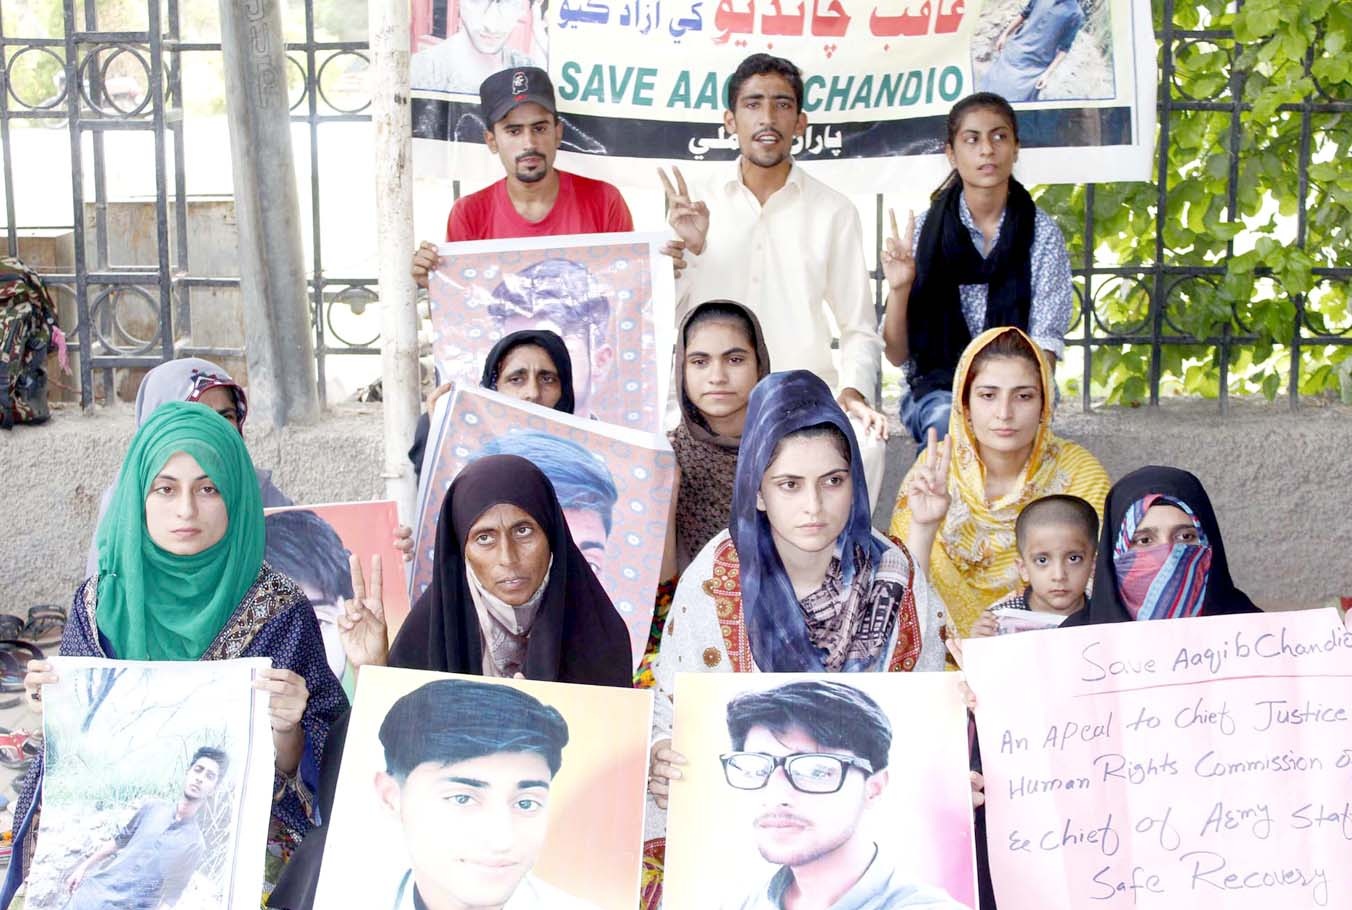 لاڑکانہ : عاقب چانڈیو کے اہلخانہ جناح باغ پر بازیابی کا مطالبہ کررہے ہیں